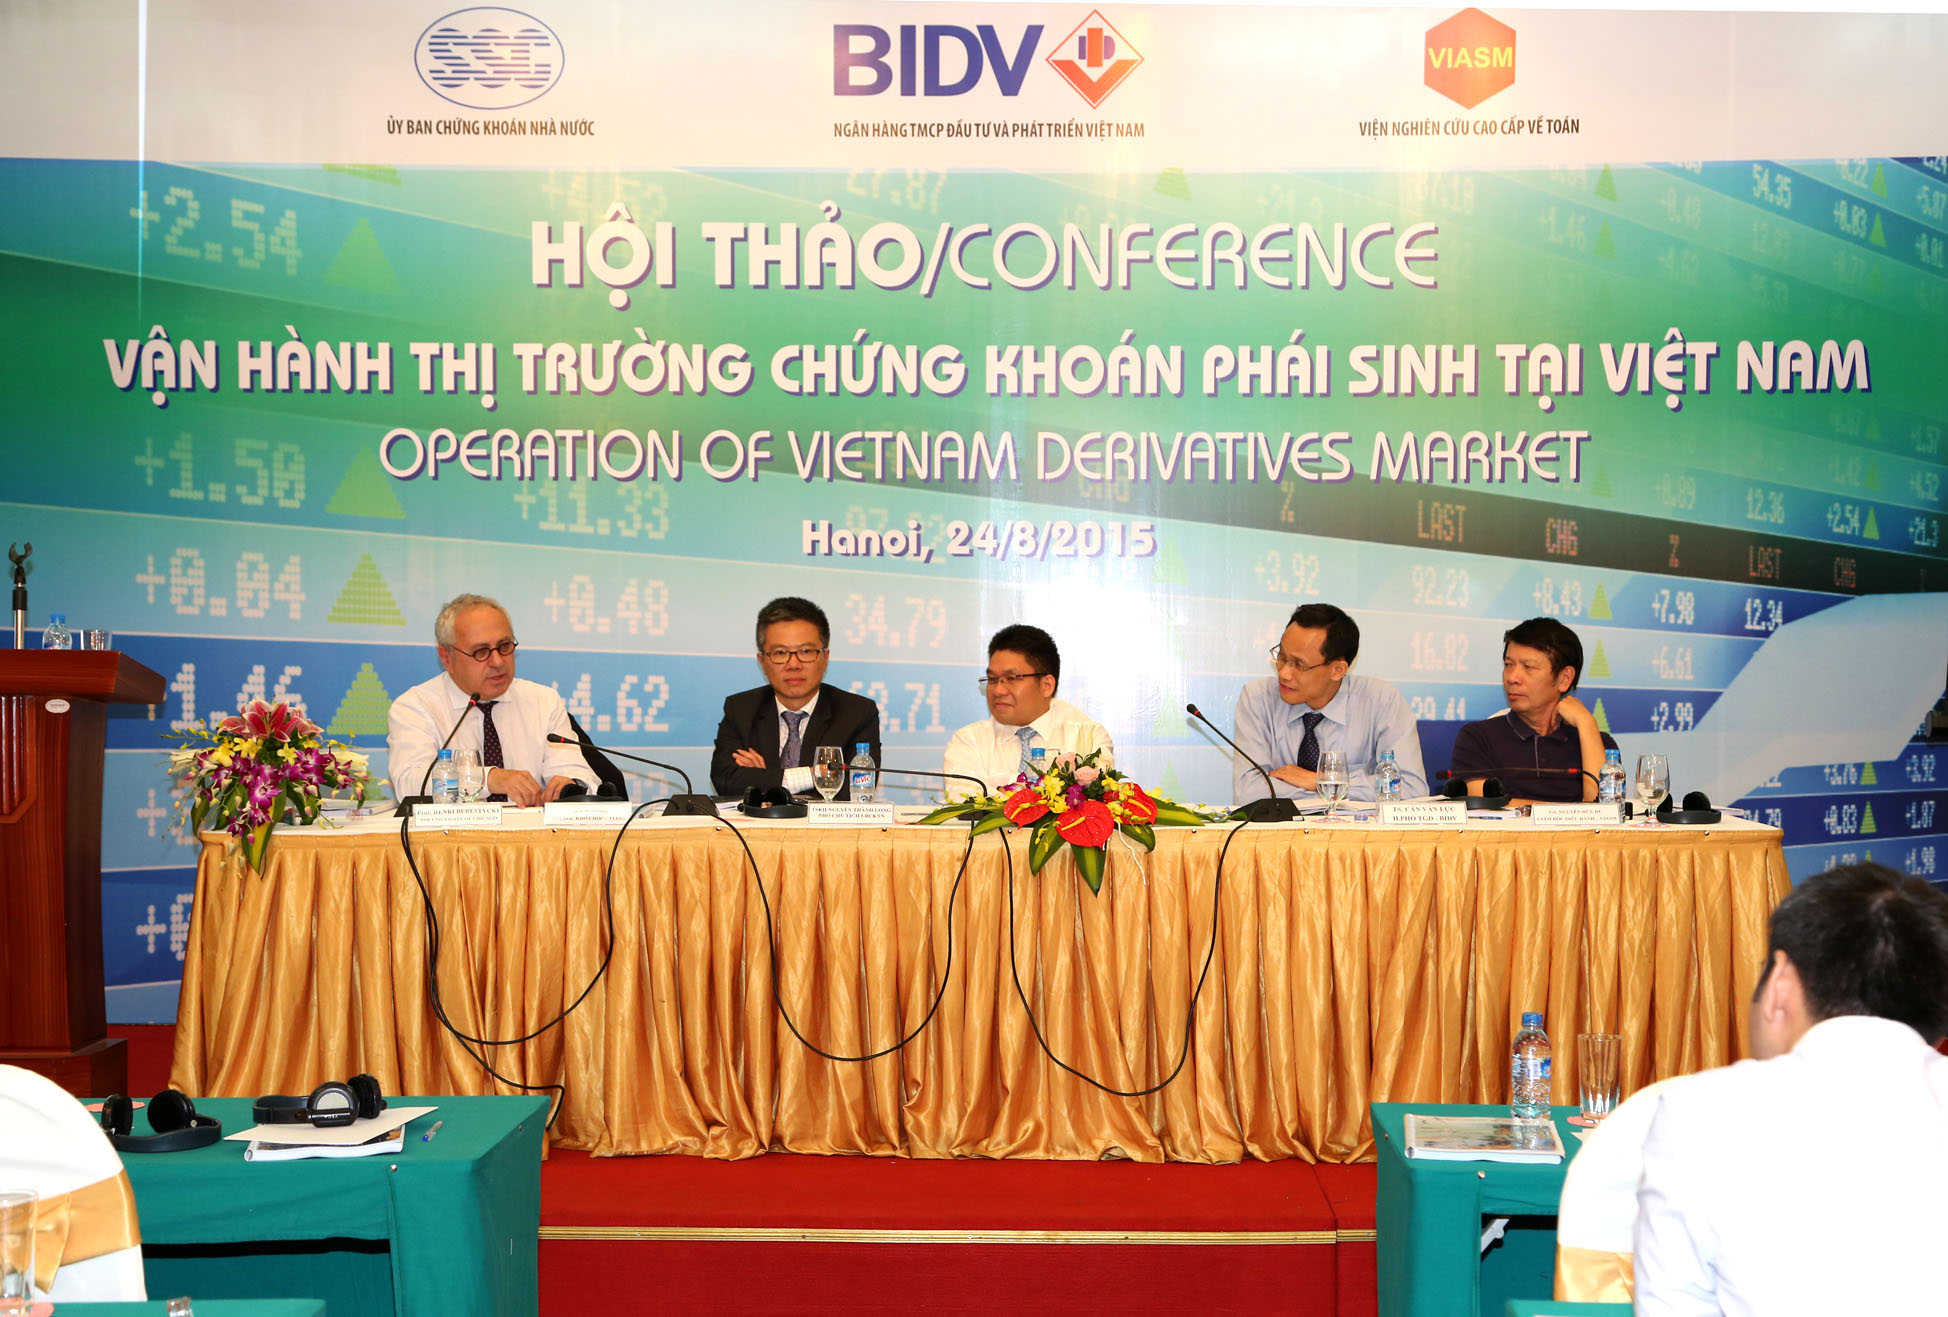 Hội thảo “Vận hành thị trường chứng khoán phái sinh Việt Nam”